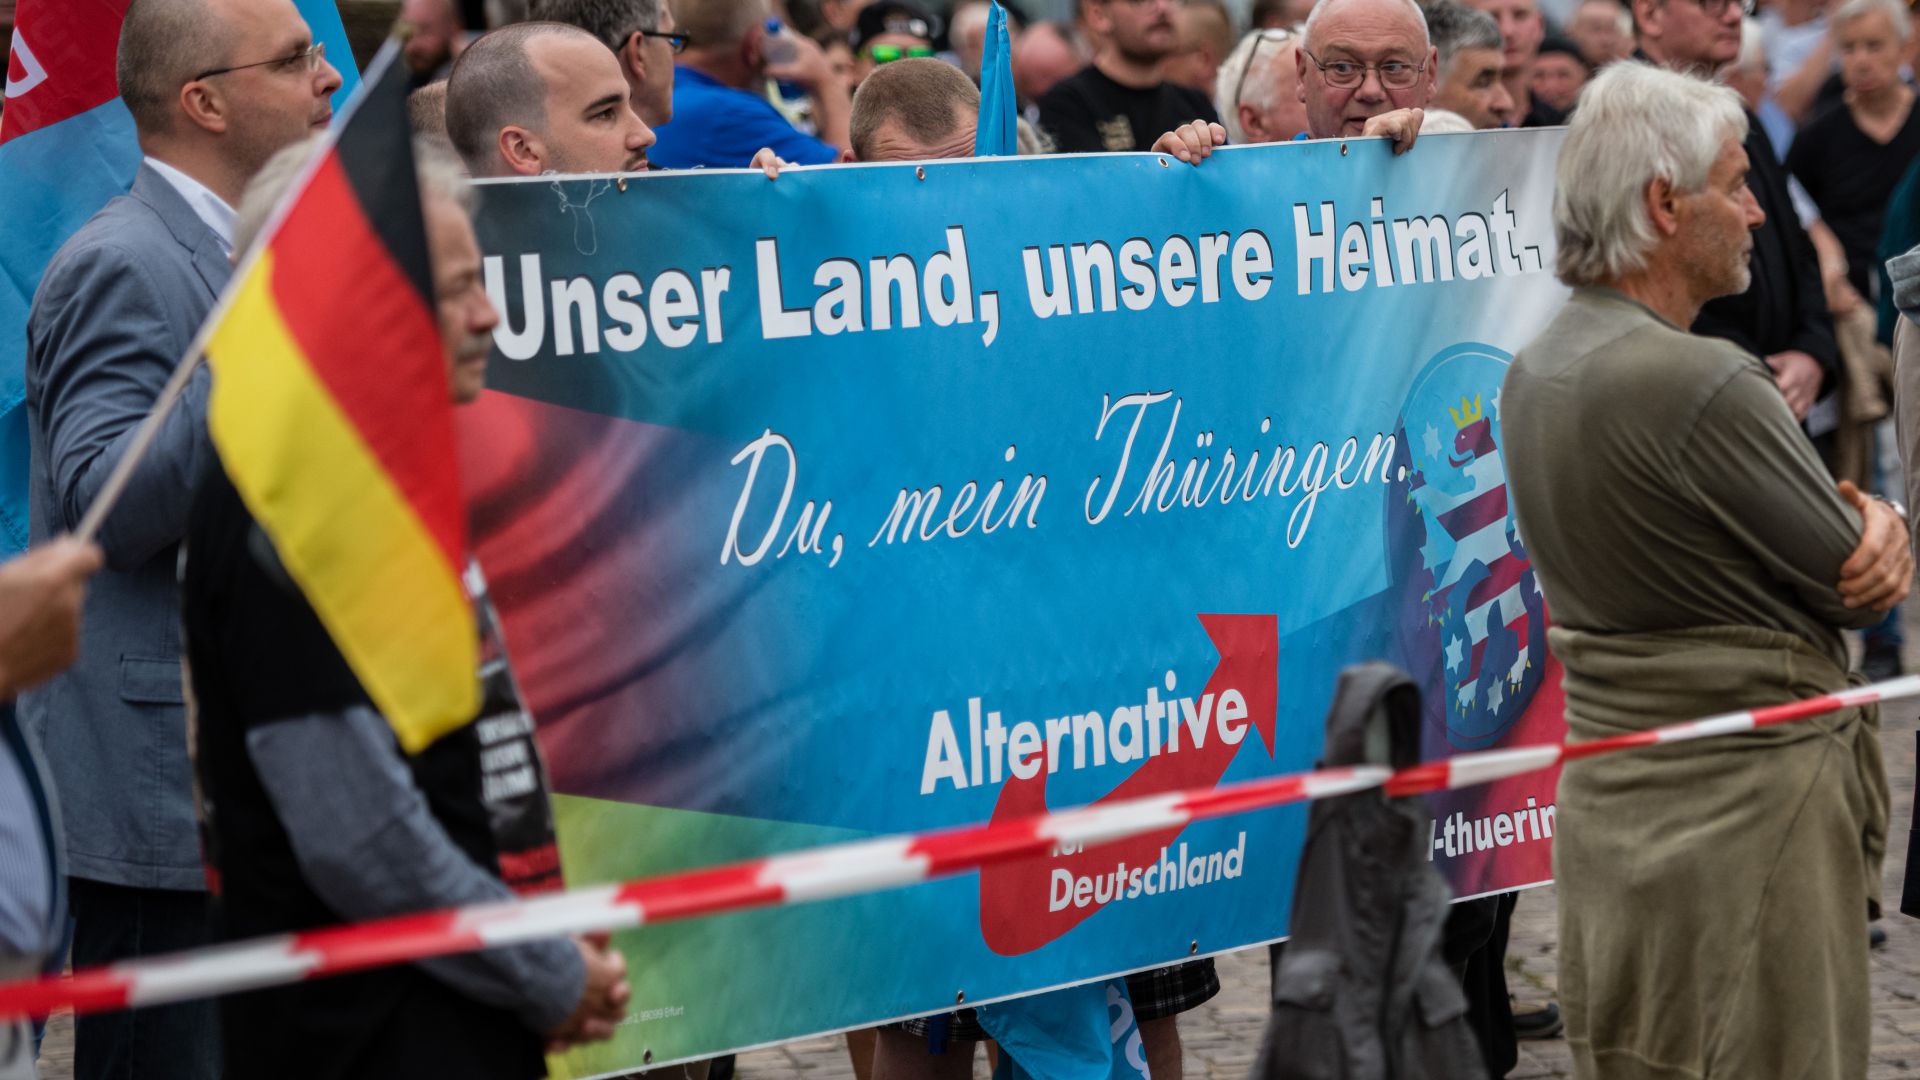 Крайната десница в Германия с нов връх по популярност, нарежда се на второ място